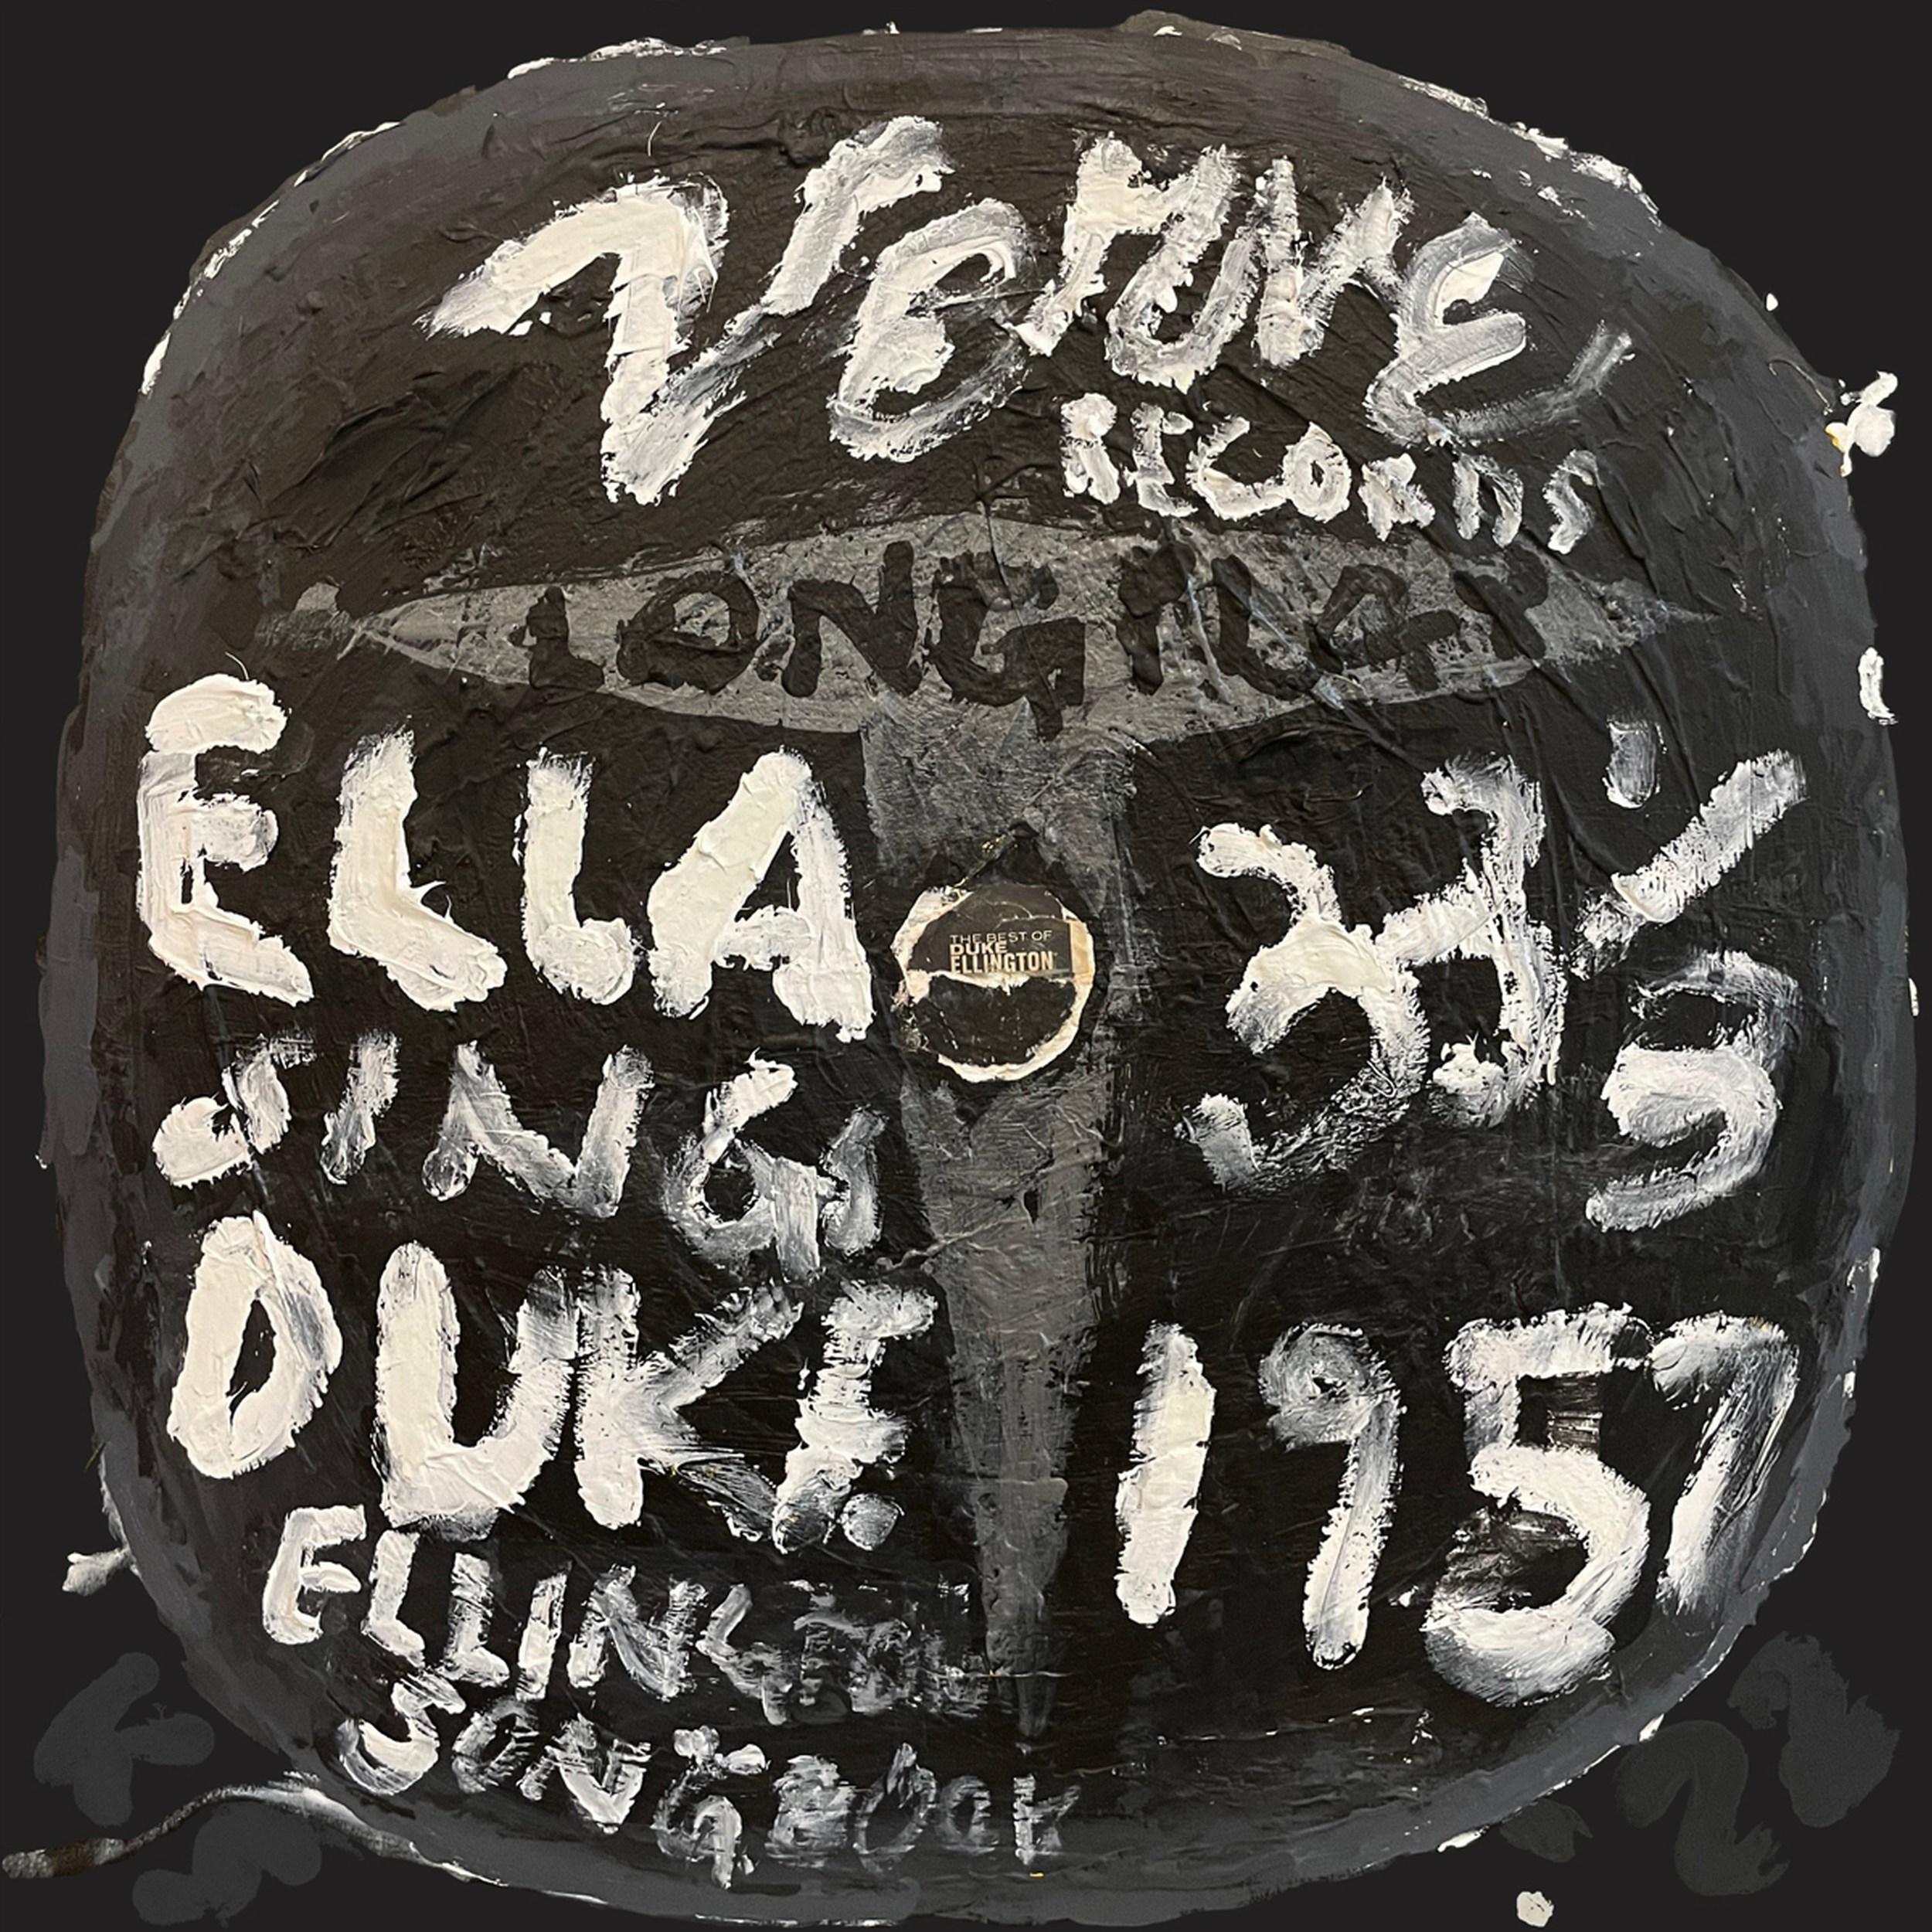 Ella Fitzgerald Sings Duke Ellington (Grammy, Albumkunst, Iconic, Jazz, Big Band)